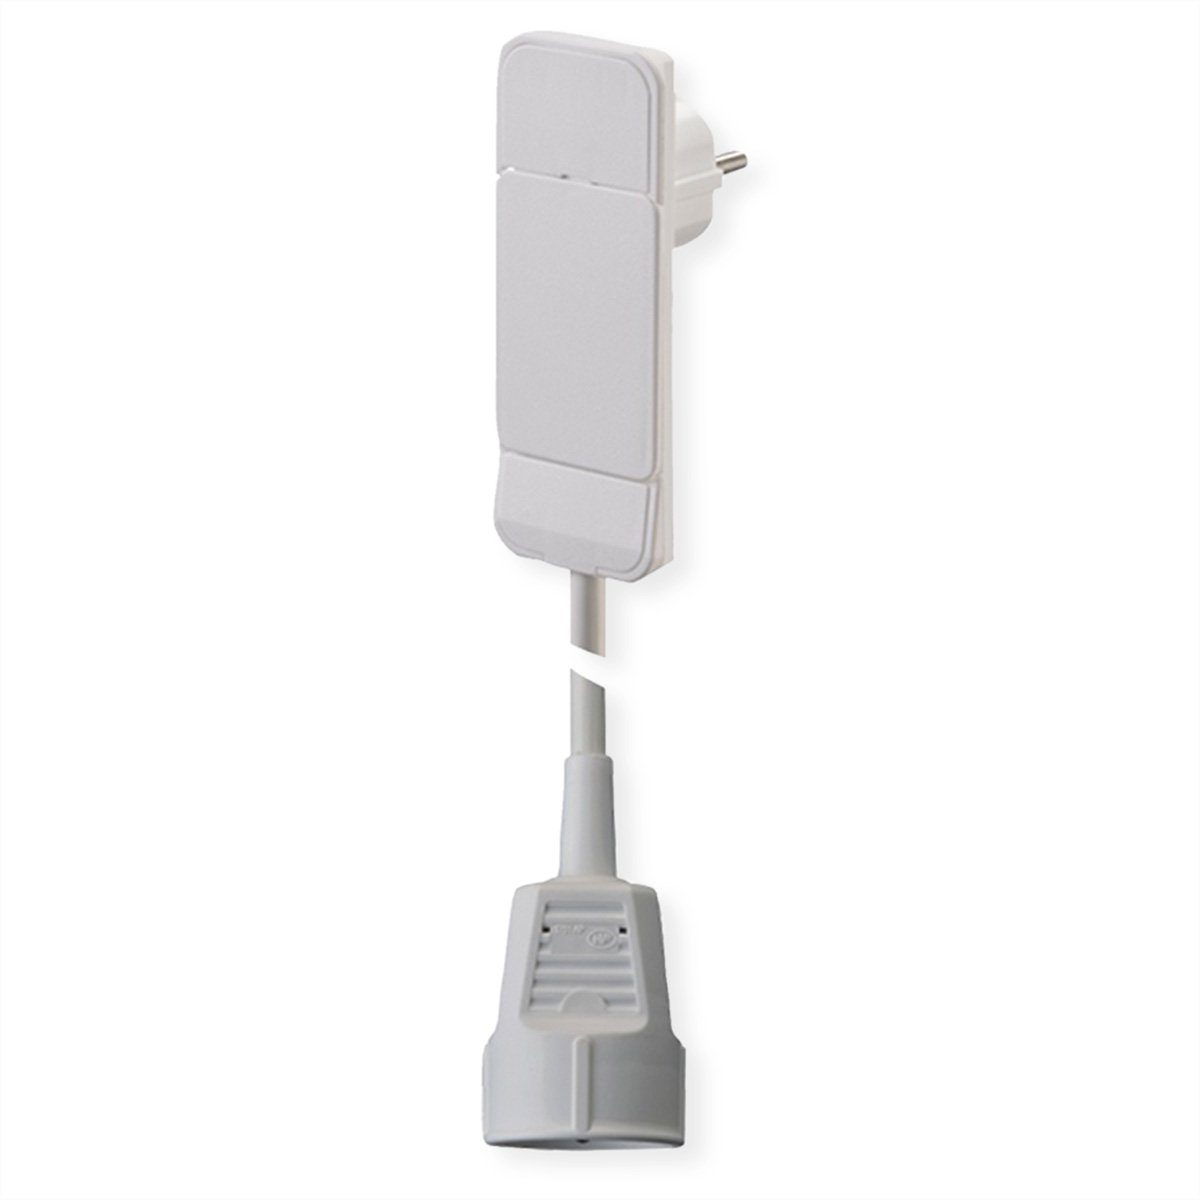 Bachmann SmartPlug Flachstecker 1x Schutzkontakt weiß Stromadapter Schutzkontakt, CEE 7/7, Typ-E/F zu Schutzkontakt, CEE 7/3, Typ-F, 300.0 cm, 3m